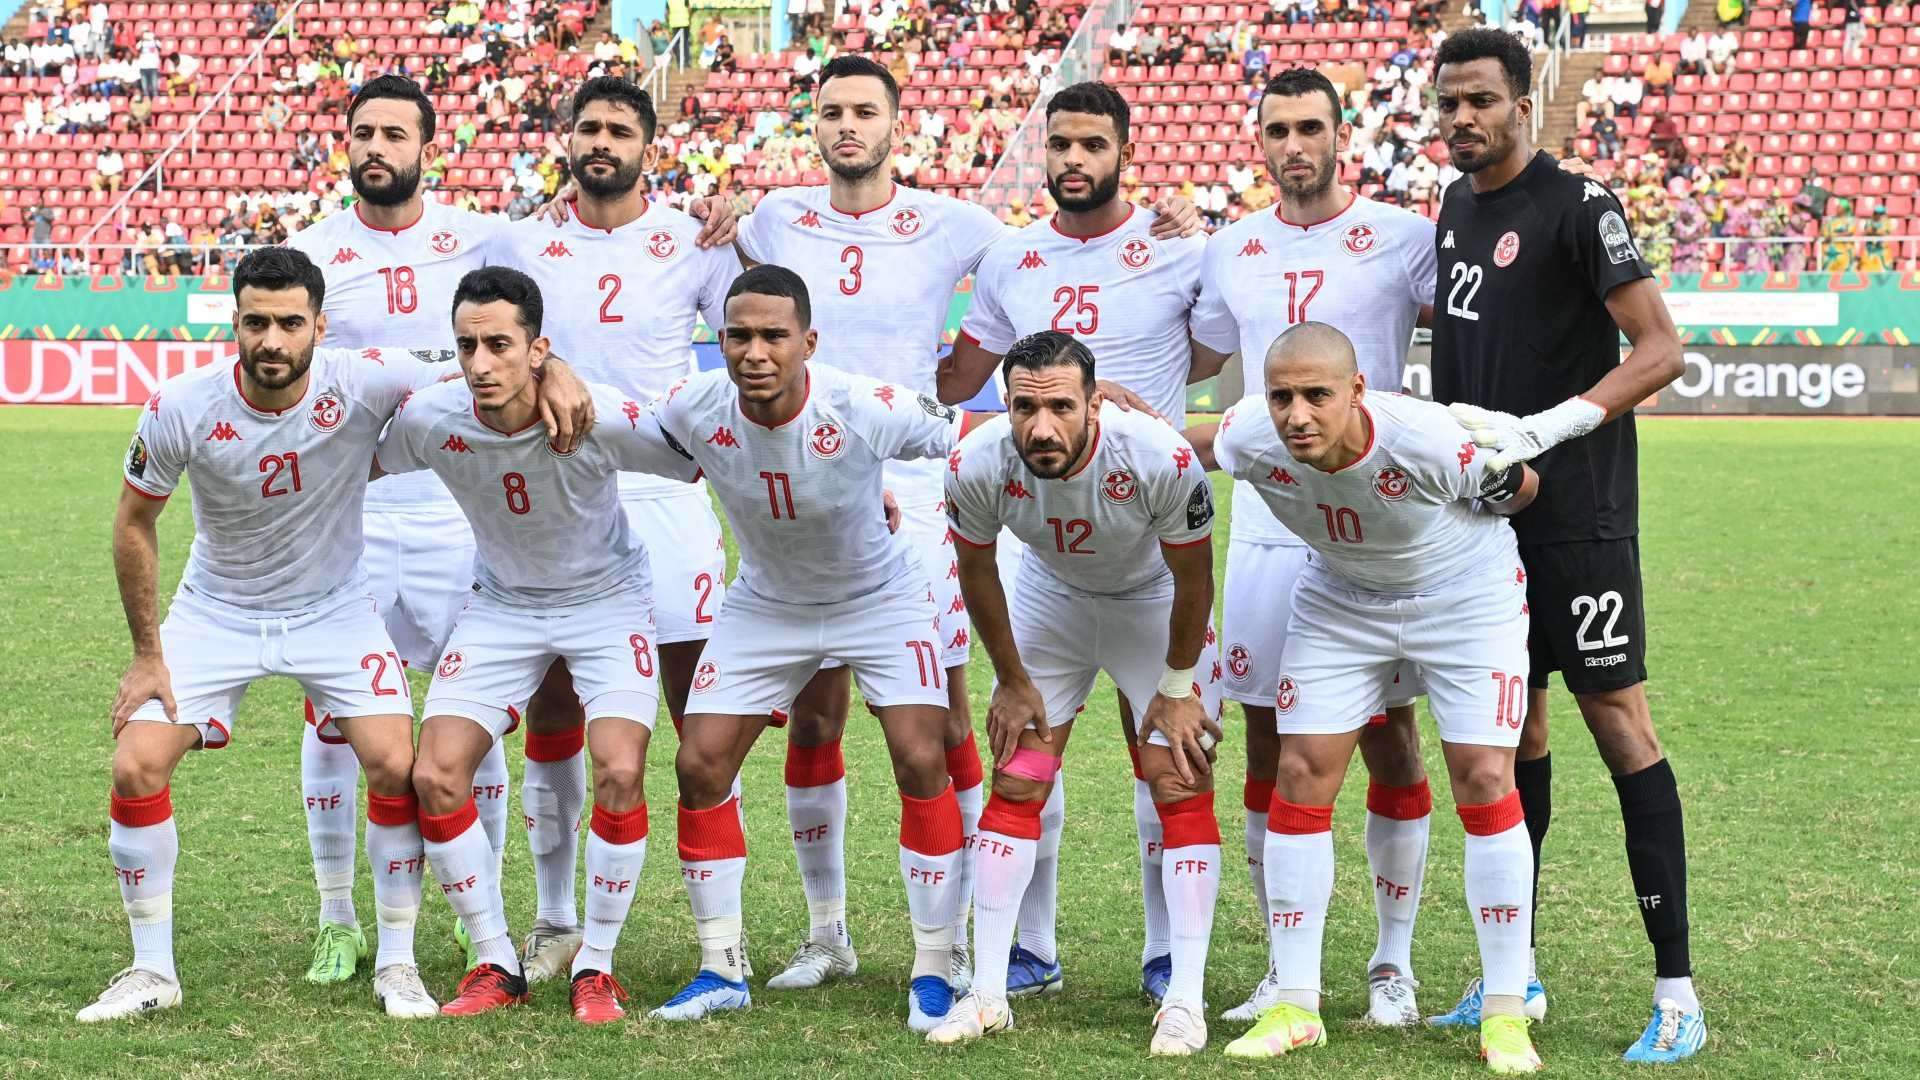 20220610 Tunisia National team